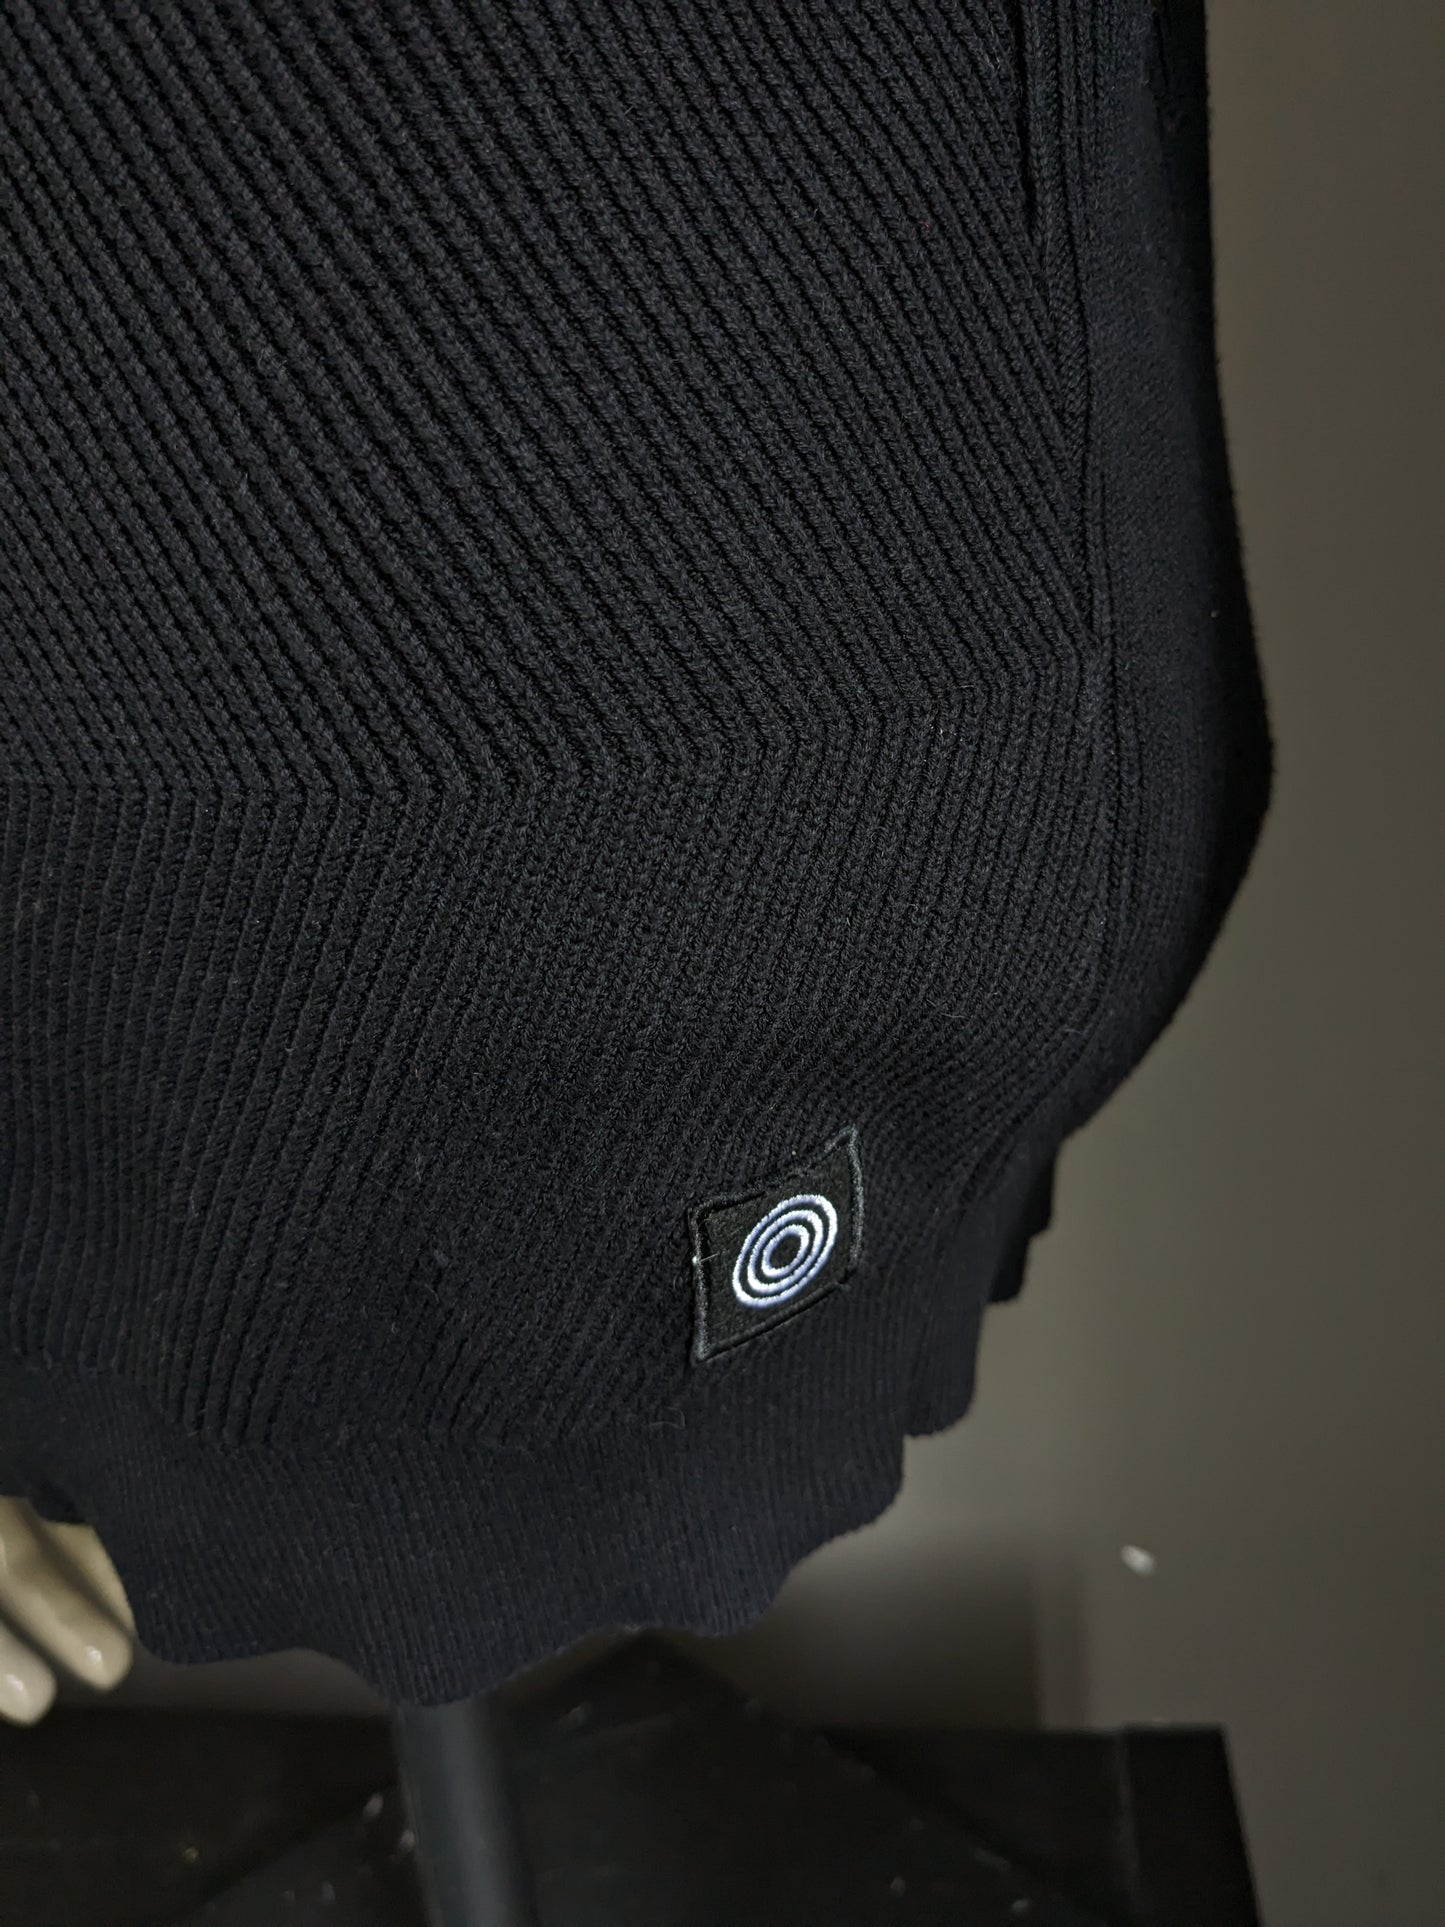 Maglione industriale blu con colletto sportivo. Moto di costola nera. Taglia M.